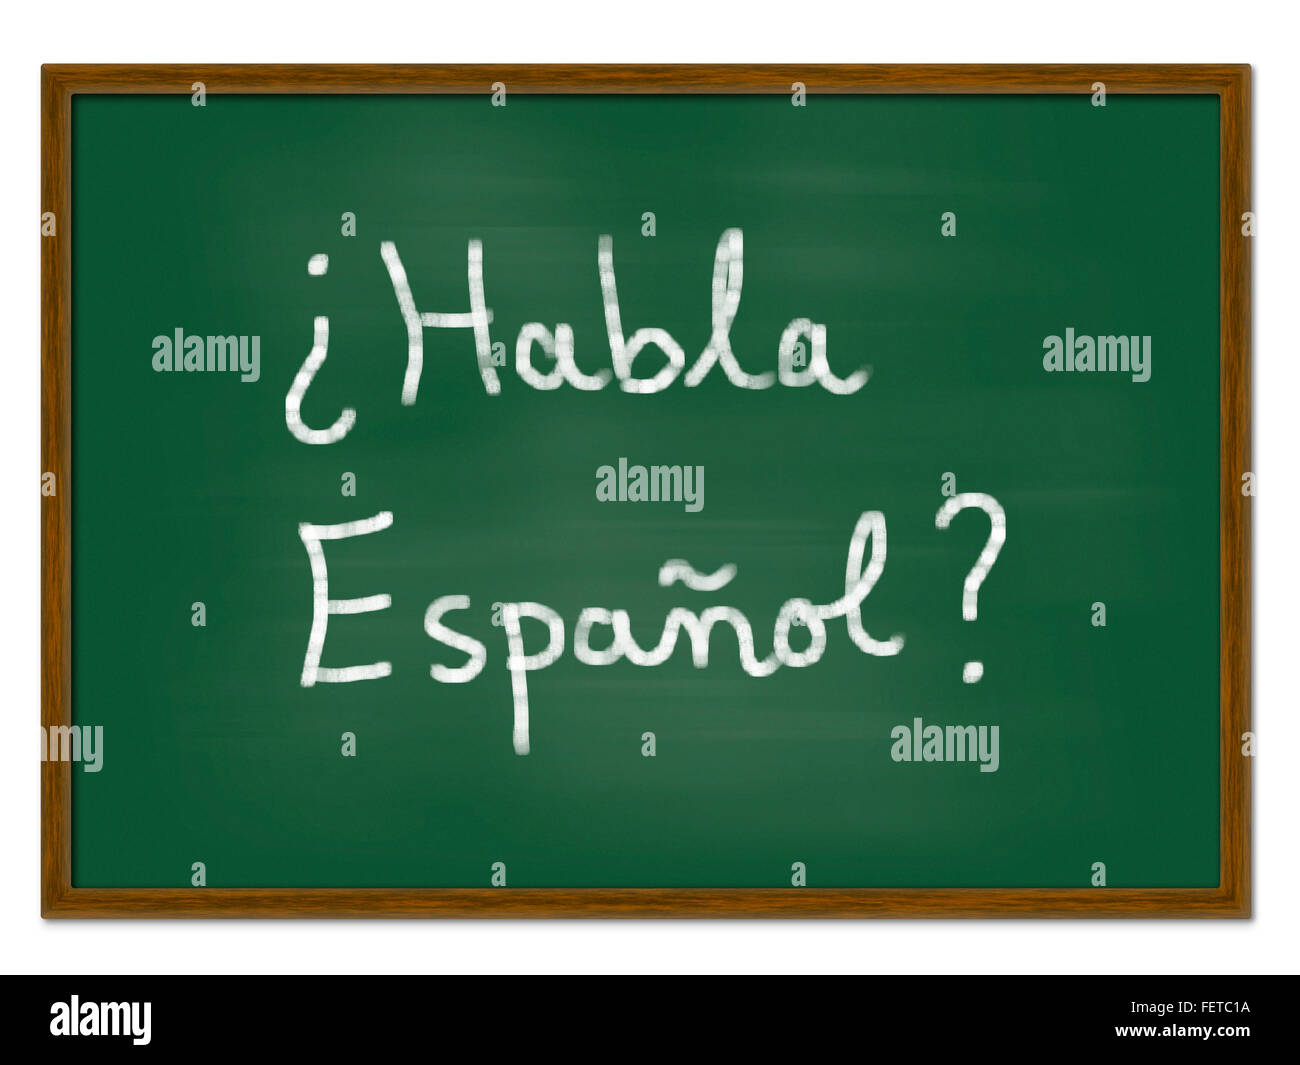 Spanisch lernen, Brett mit "Habla Espanol" Konzept (sprechen Sie Spanisch?) Stockfoto